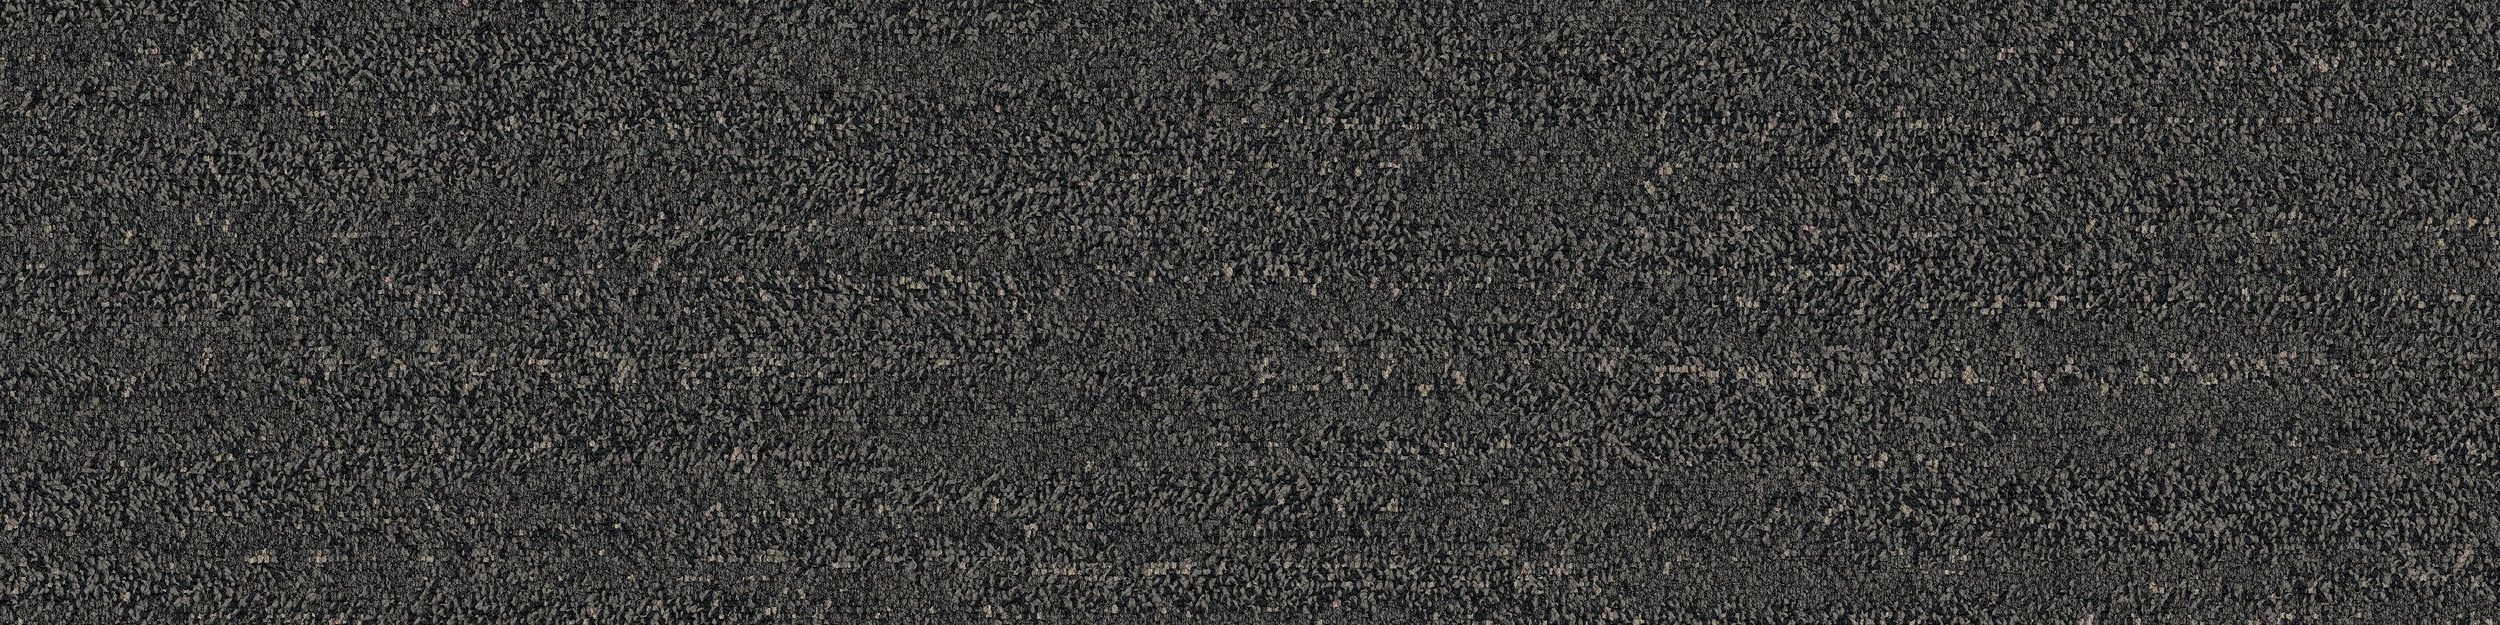 Rockland Road Carpet Tile In Charcoal Quarry numéro d’image 2